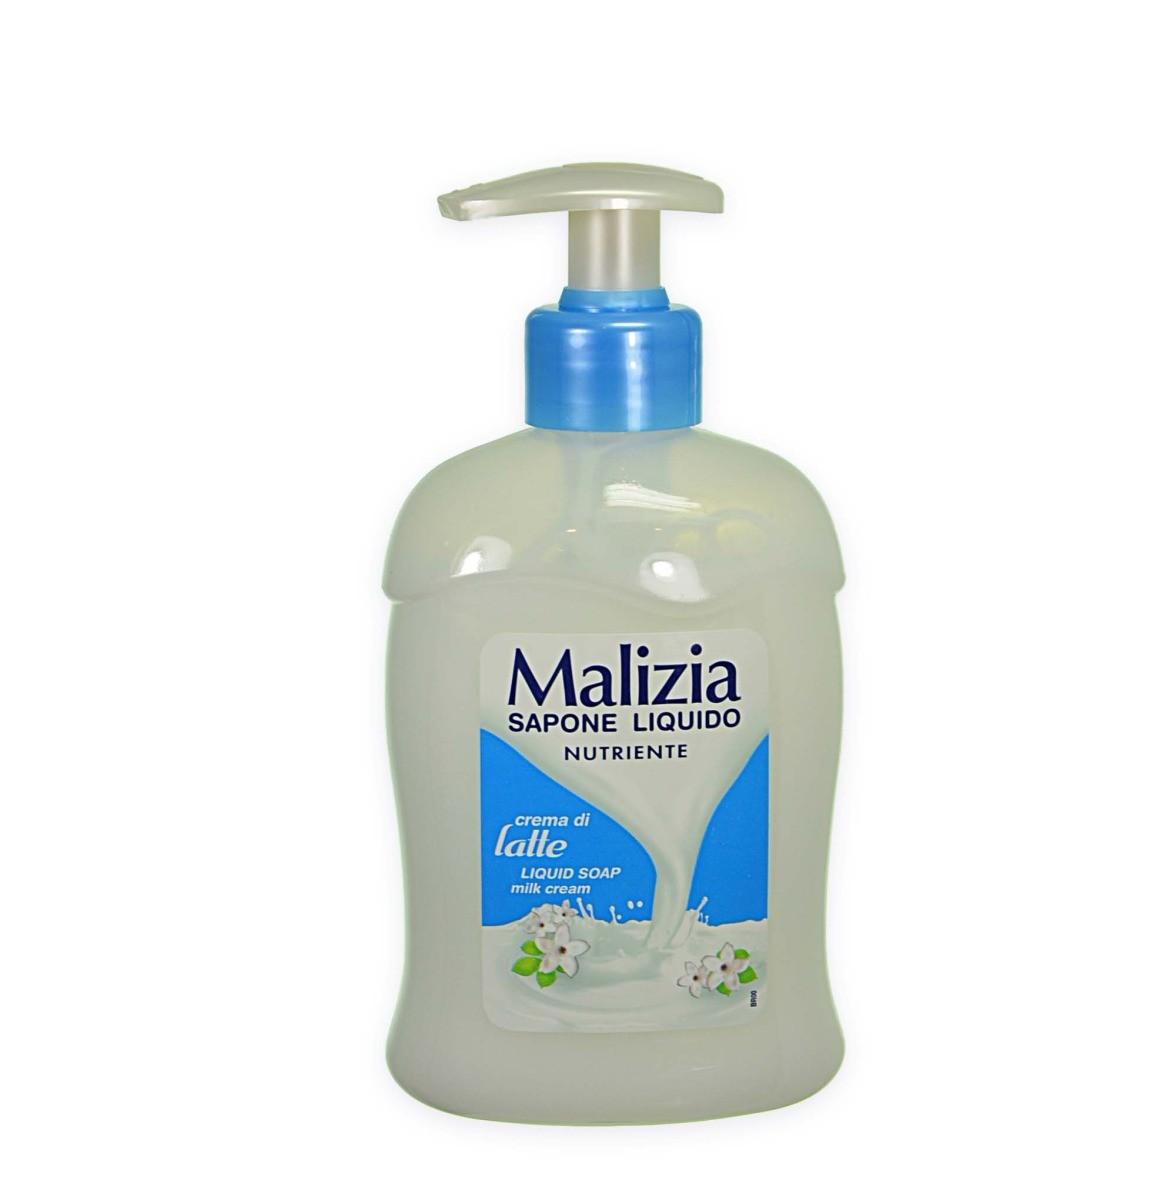 Крем мыло для душа. Жидкое мыло Malizia. Malizia мыло жидкое 2015 год. Итальянское мыло. Мализиа крем.